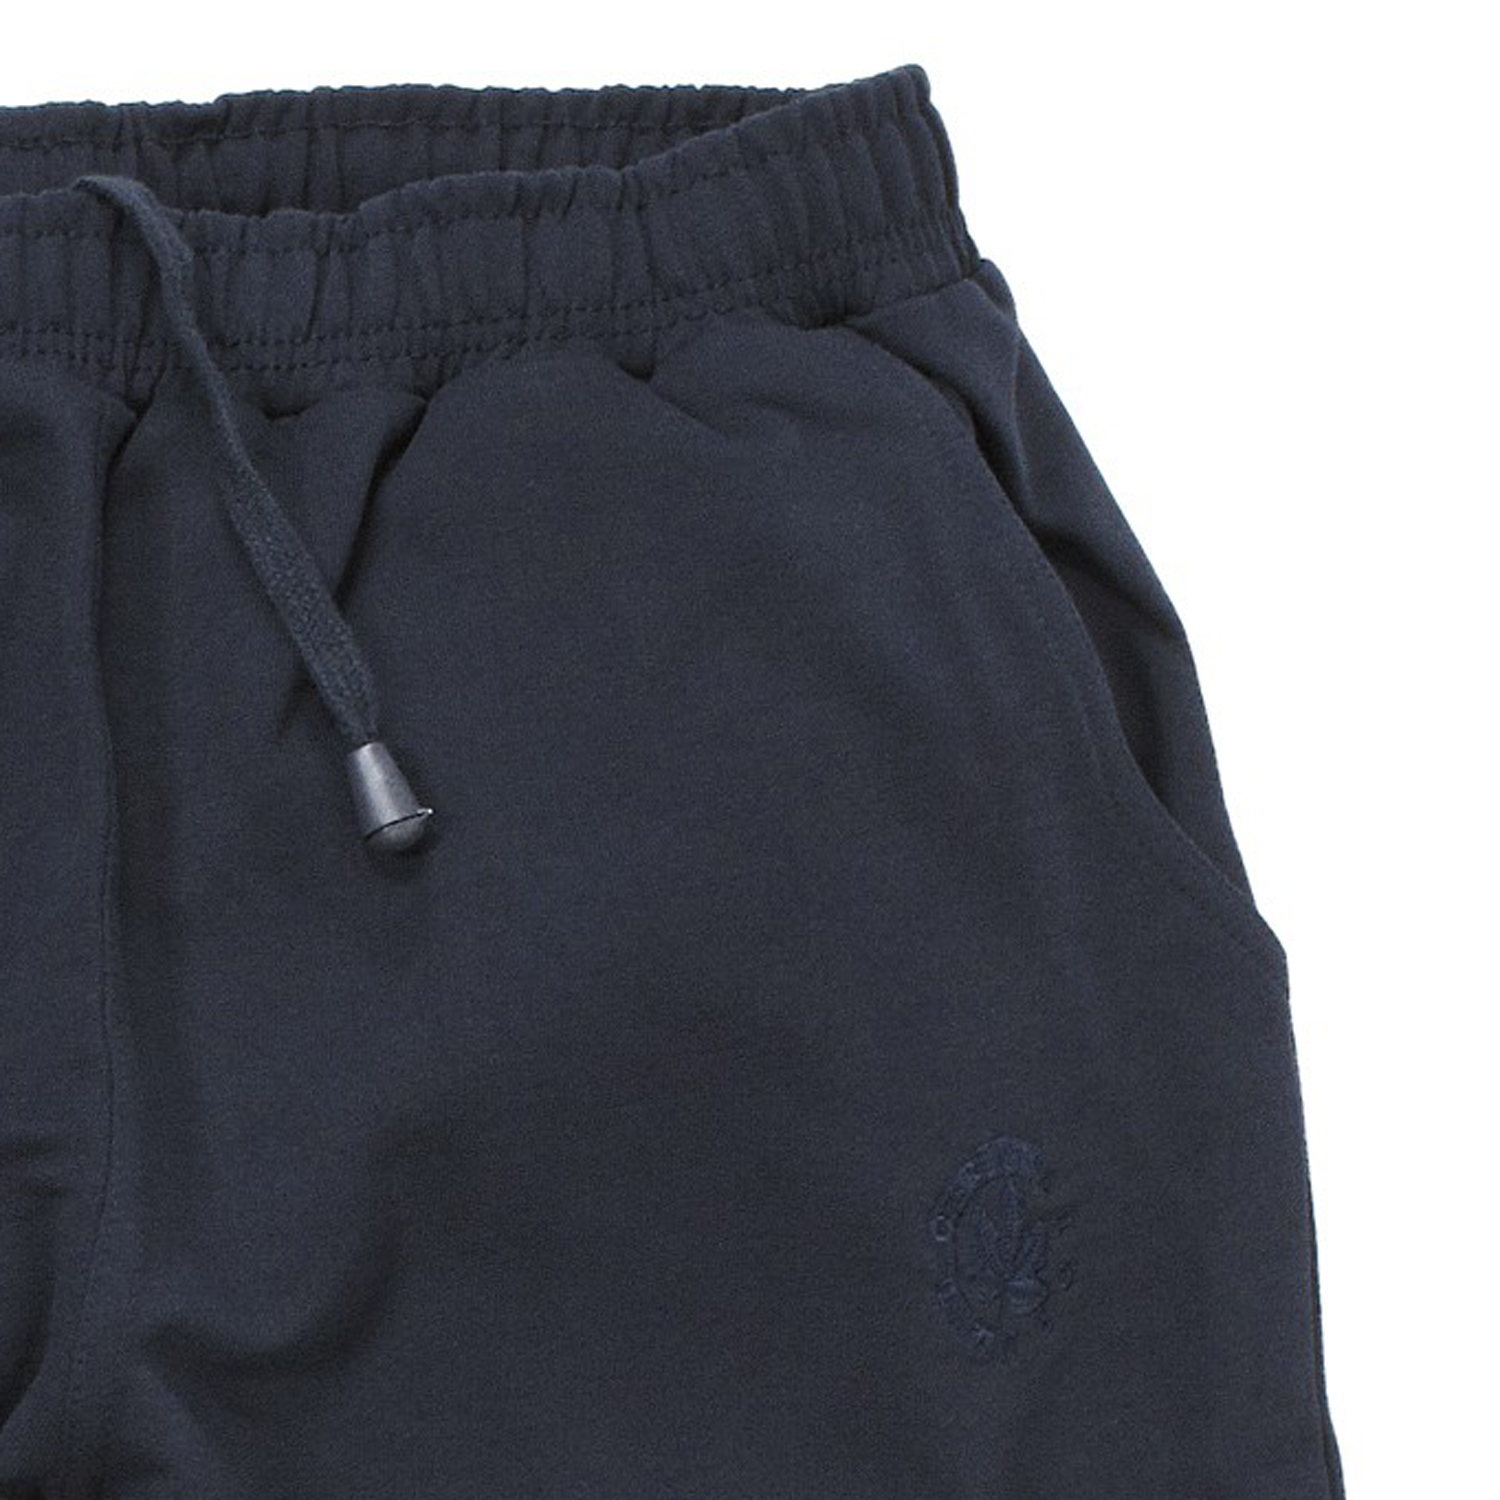 Herren Basic Sweat Bermuda von Ahorn Sportswear in dunkelblau bis Übergröße 10XL